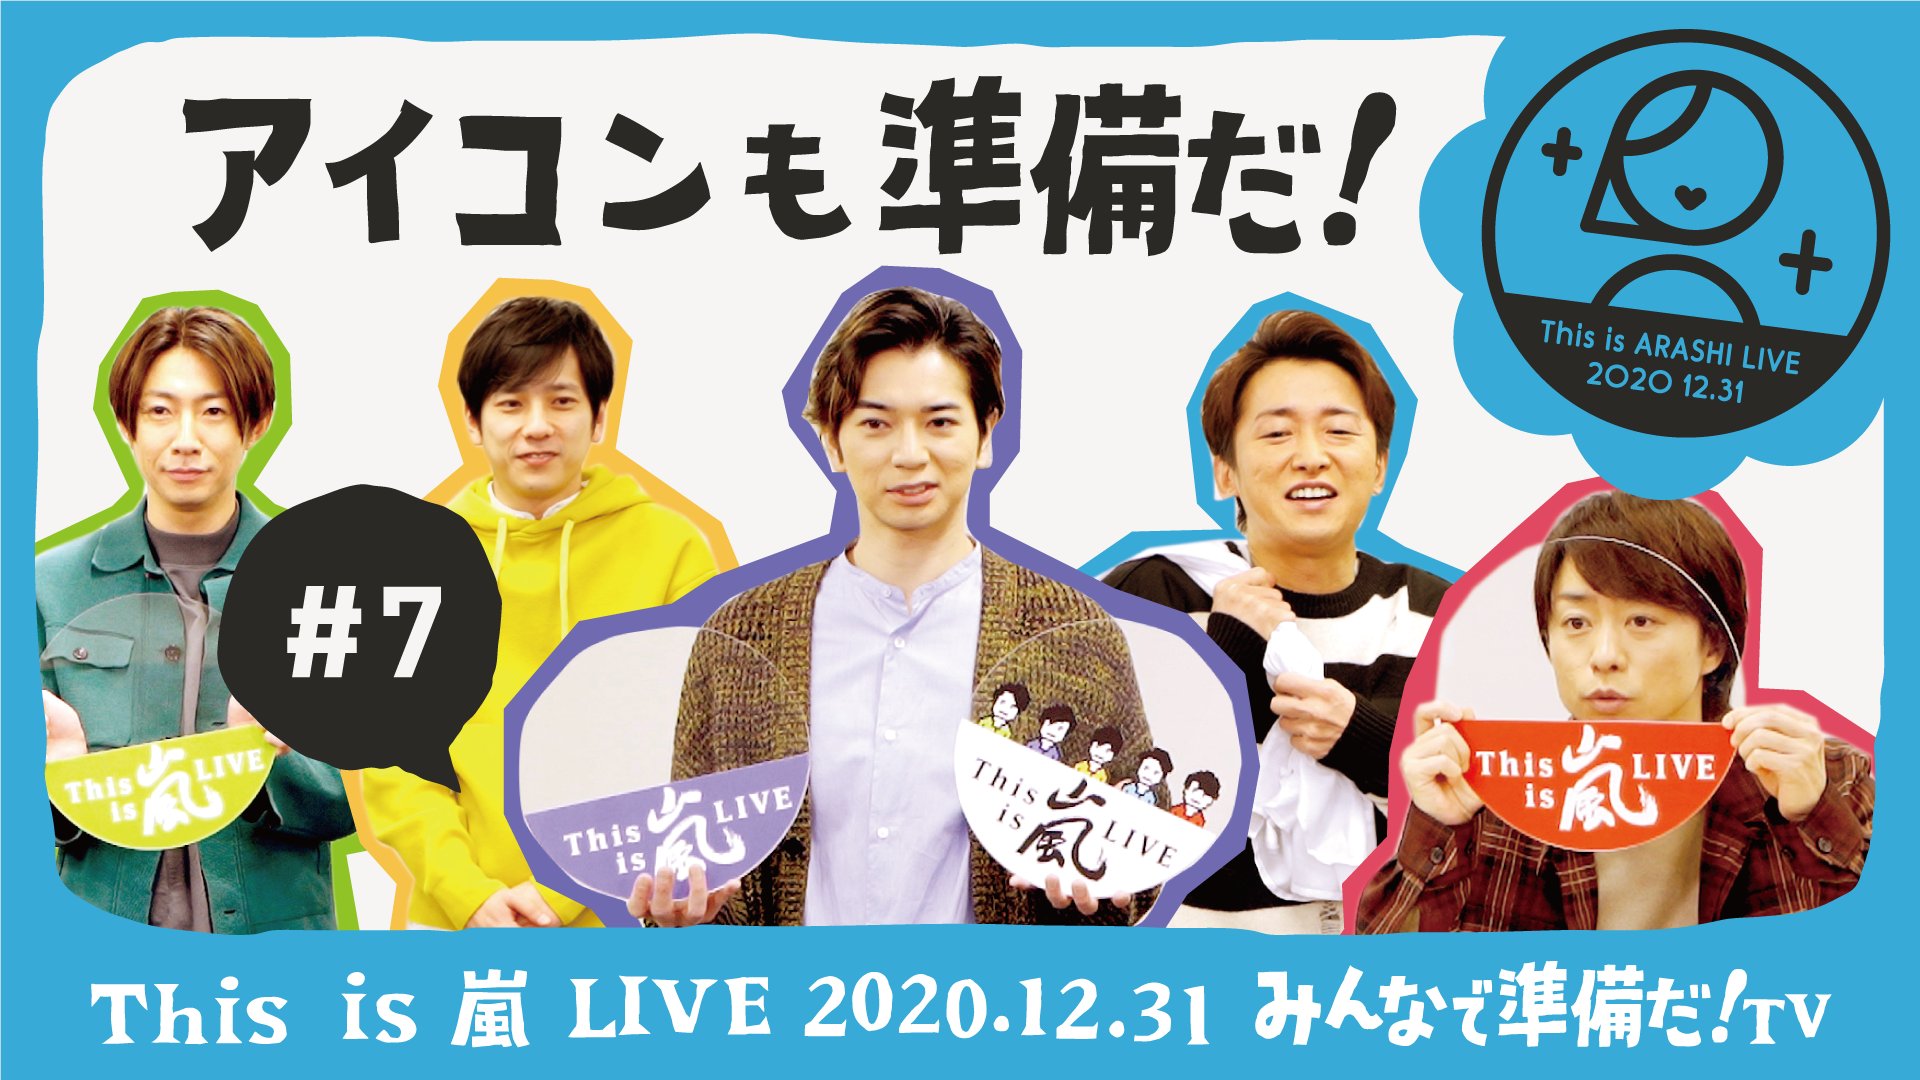 嵐 LIVE 2020.12.31 (初回生産限定盤) (Blu-ray)